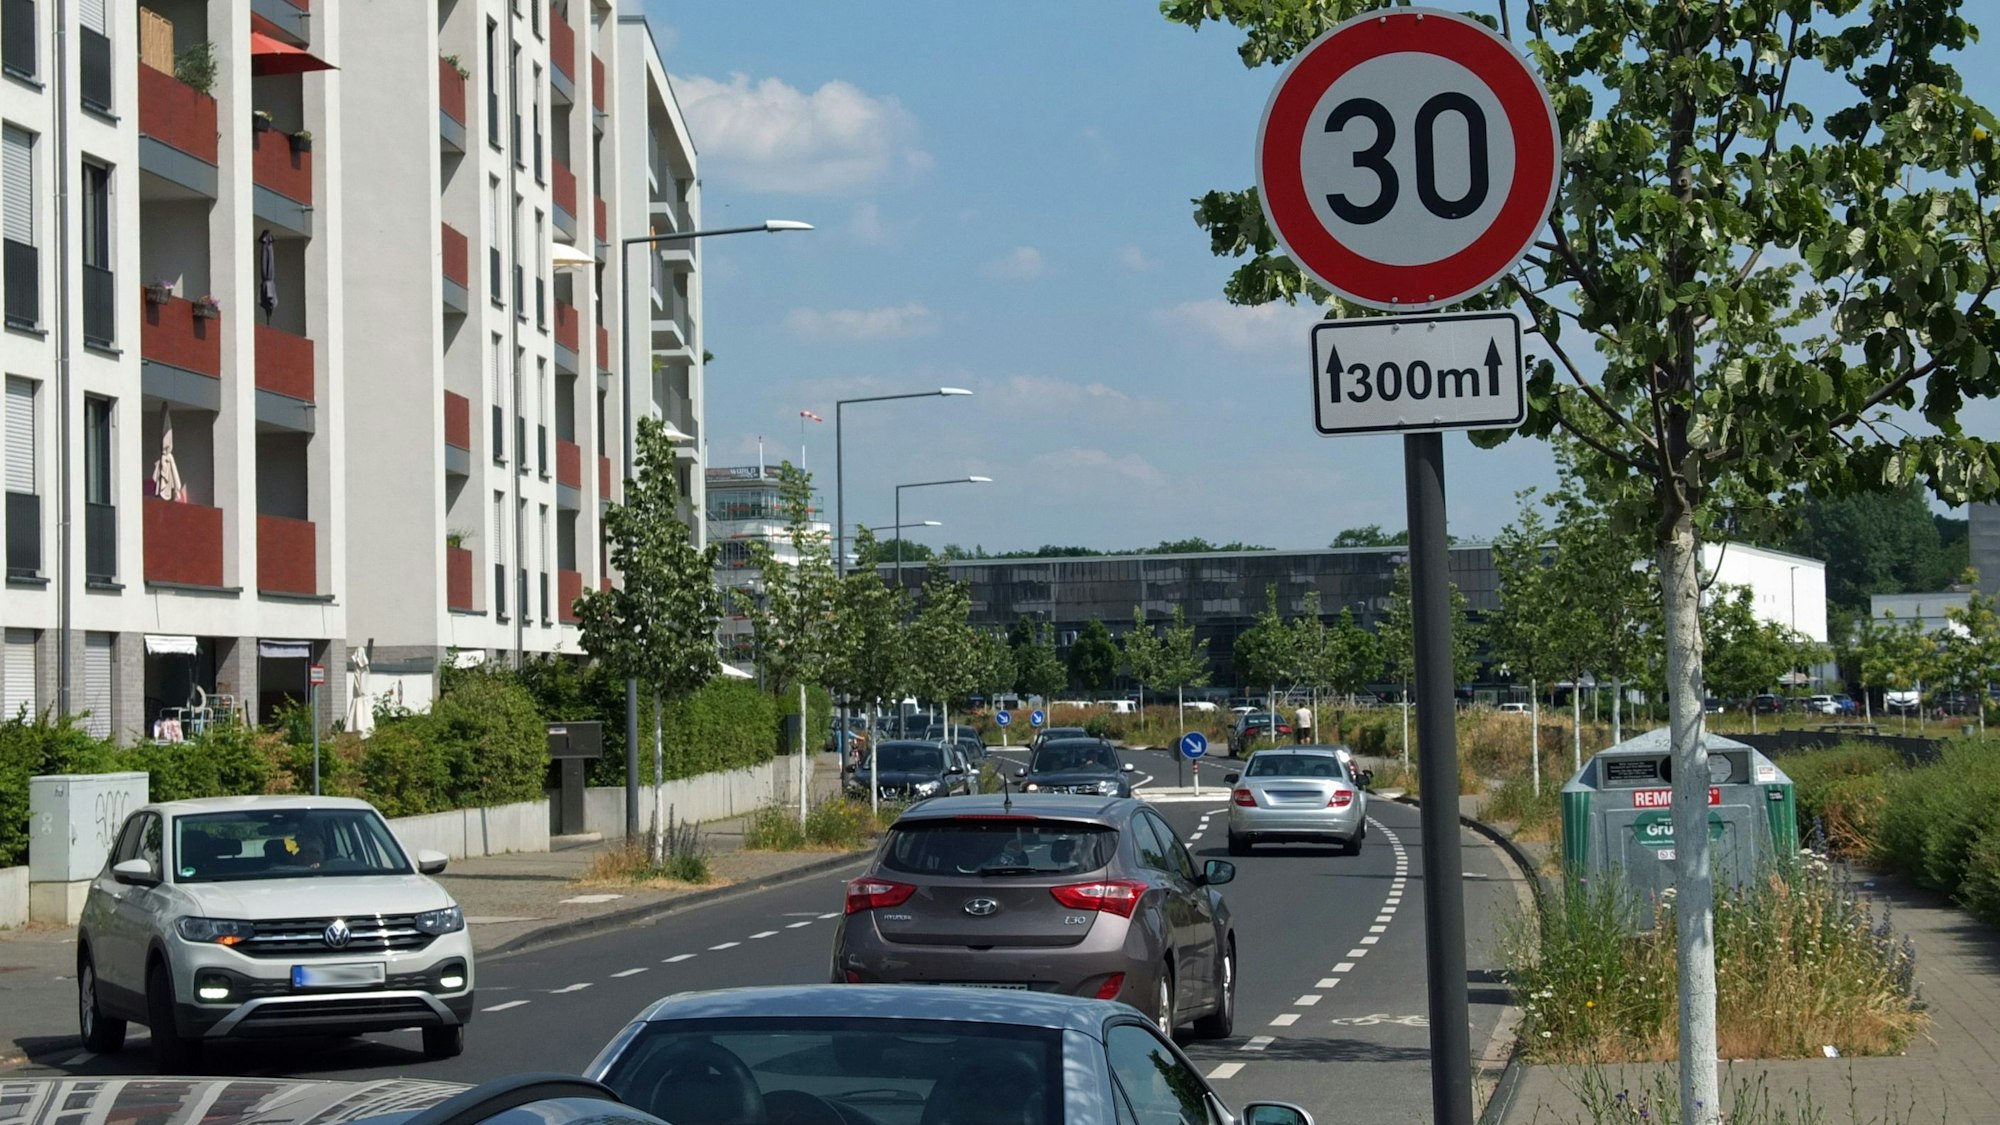 Straßenabschnitt mit einem Tempo 30 Schild, auf dem in beide Richtungen Autos unterwegs sind